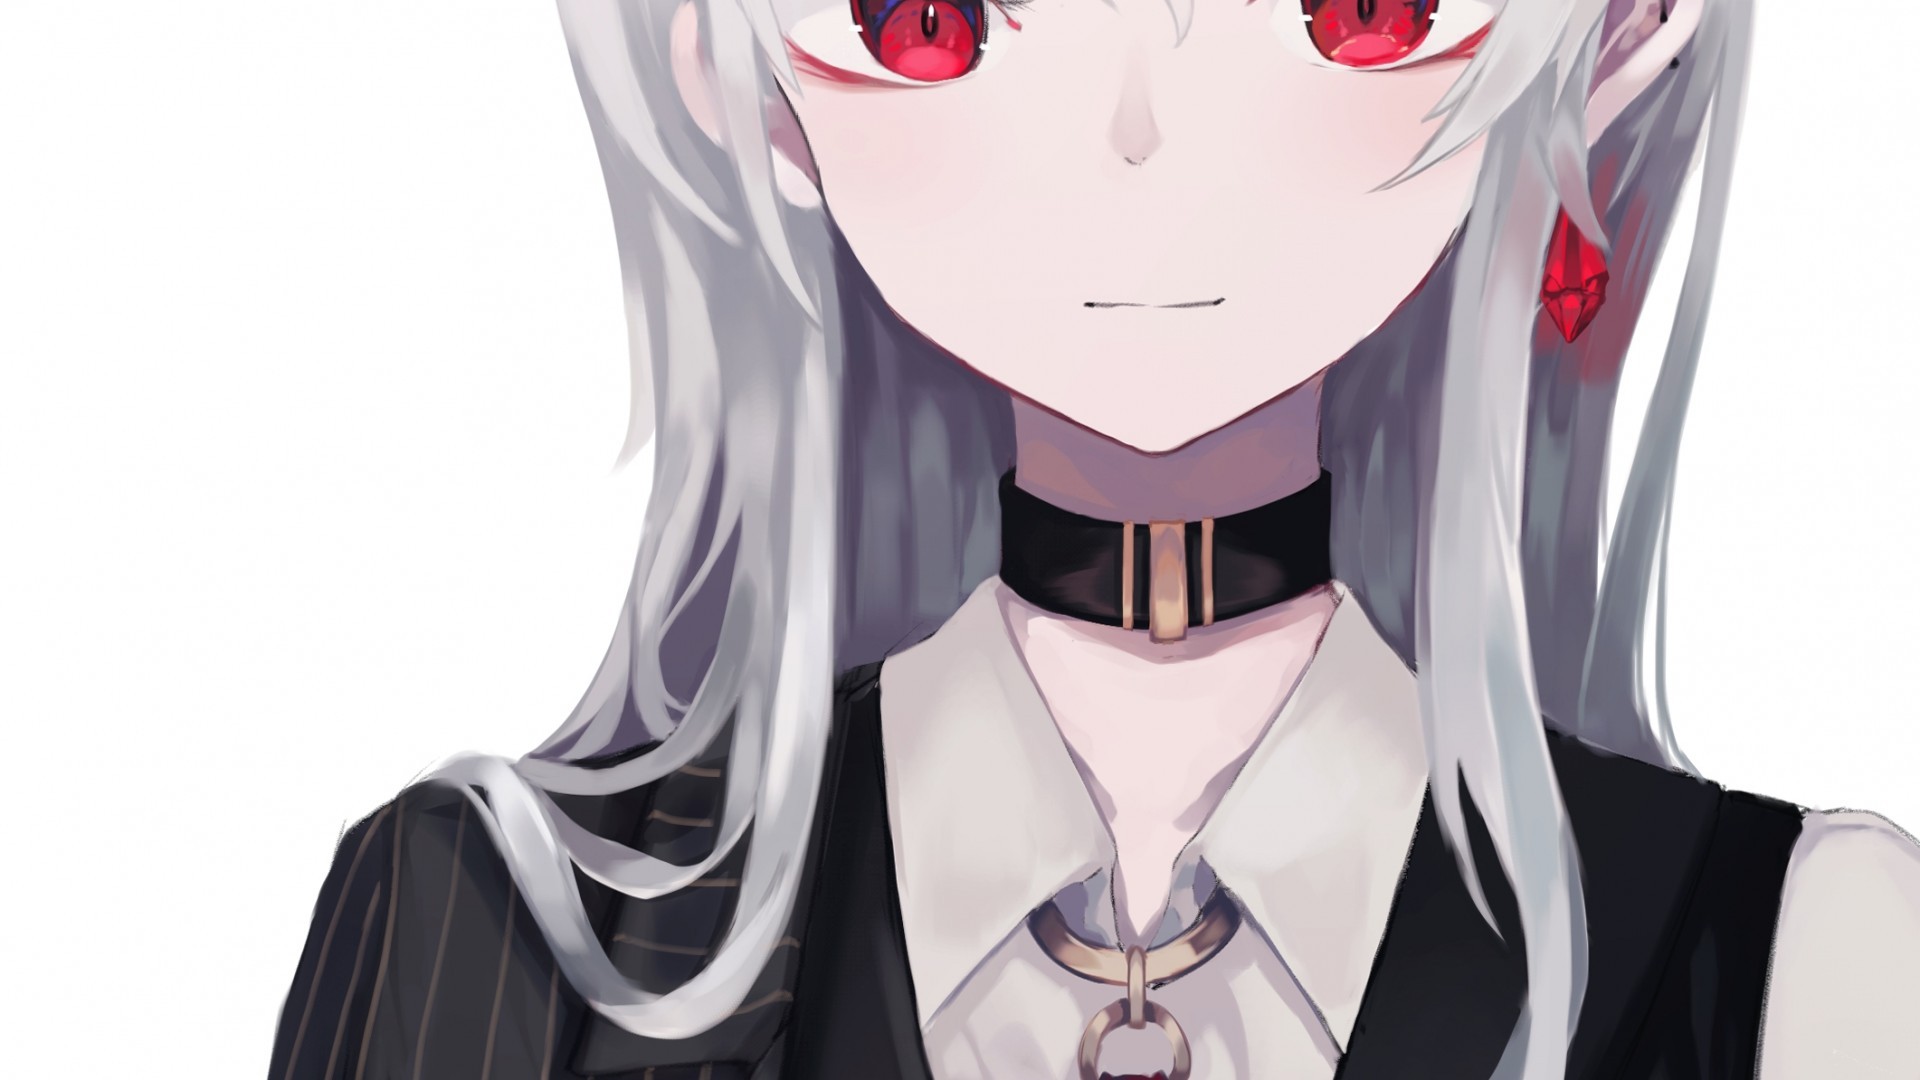 Anime Girl, Suit, Red Eyes, Heart, White Hair, Choker - HD Wallpaper 